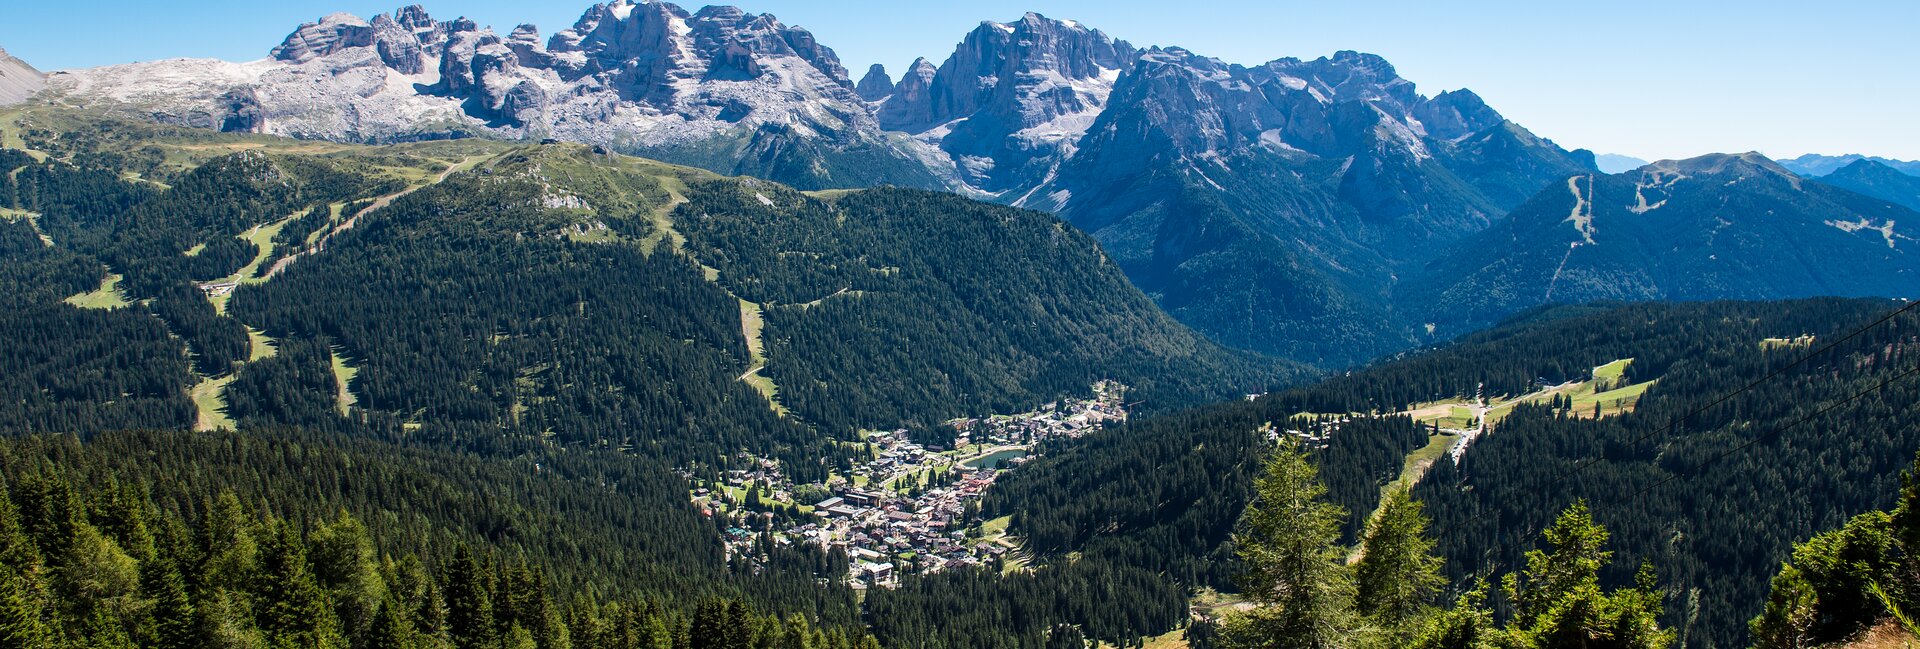 Madonna di Campiglio - Wakacje we włoskich Alpach